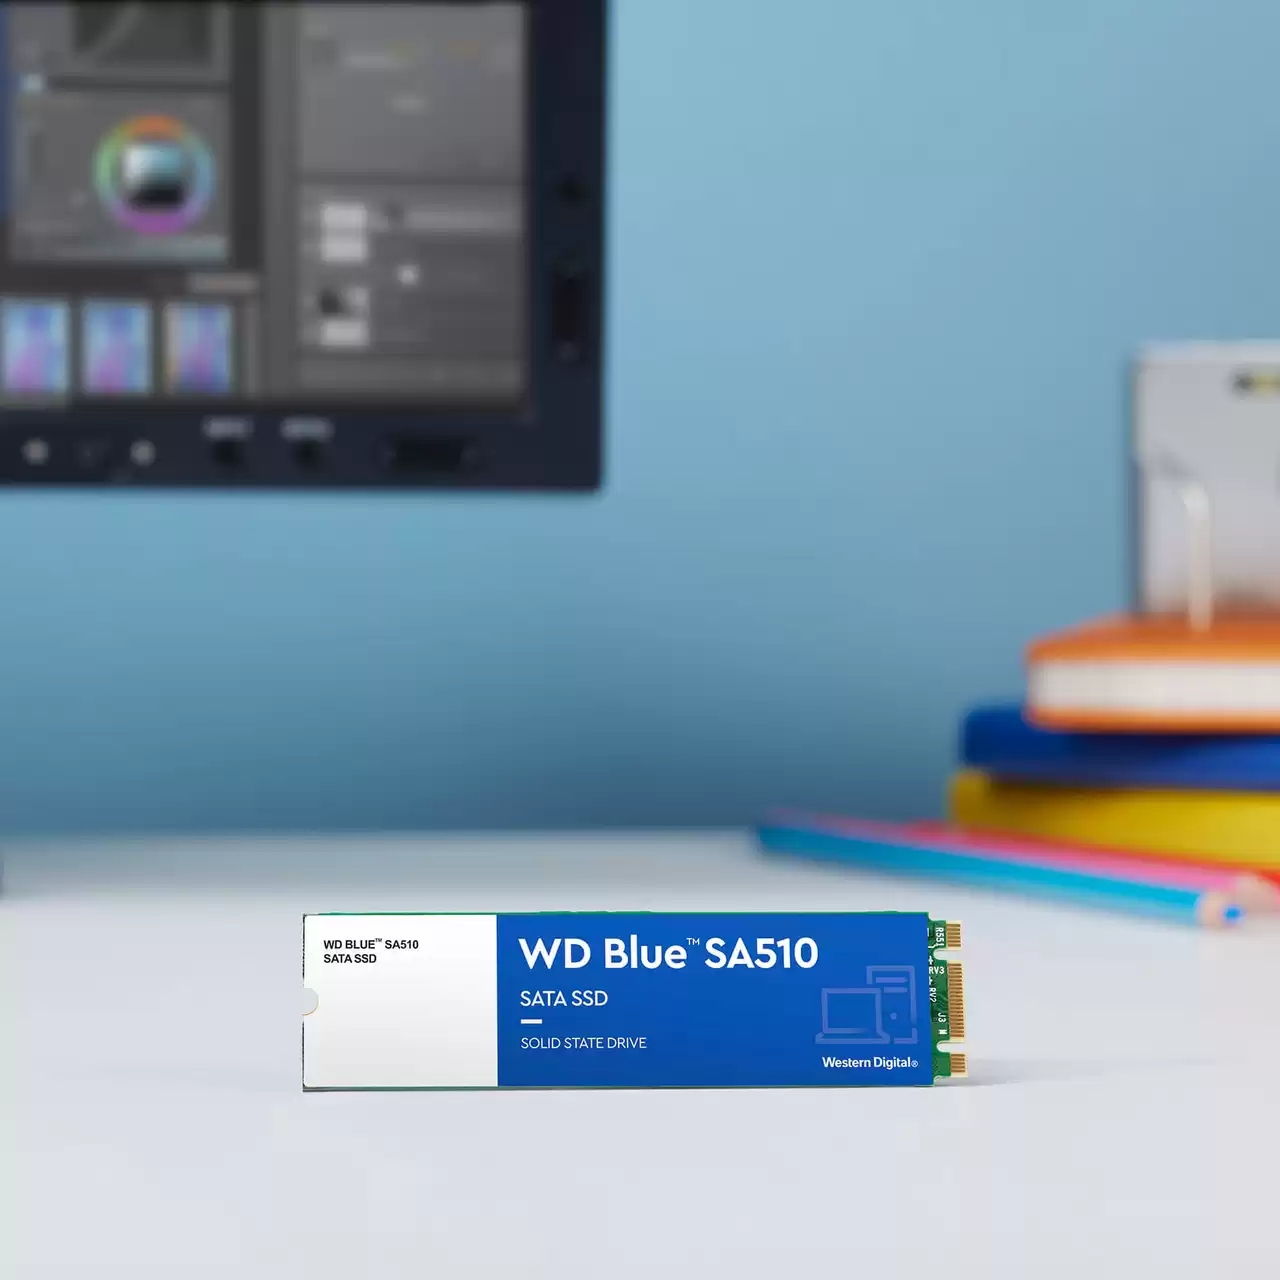 SSD WD Blue M.2 250GB 3D NAND SATA (WDS250G3B0B) - BTO